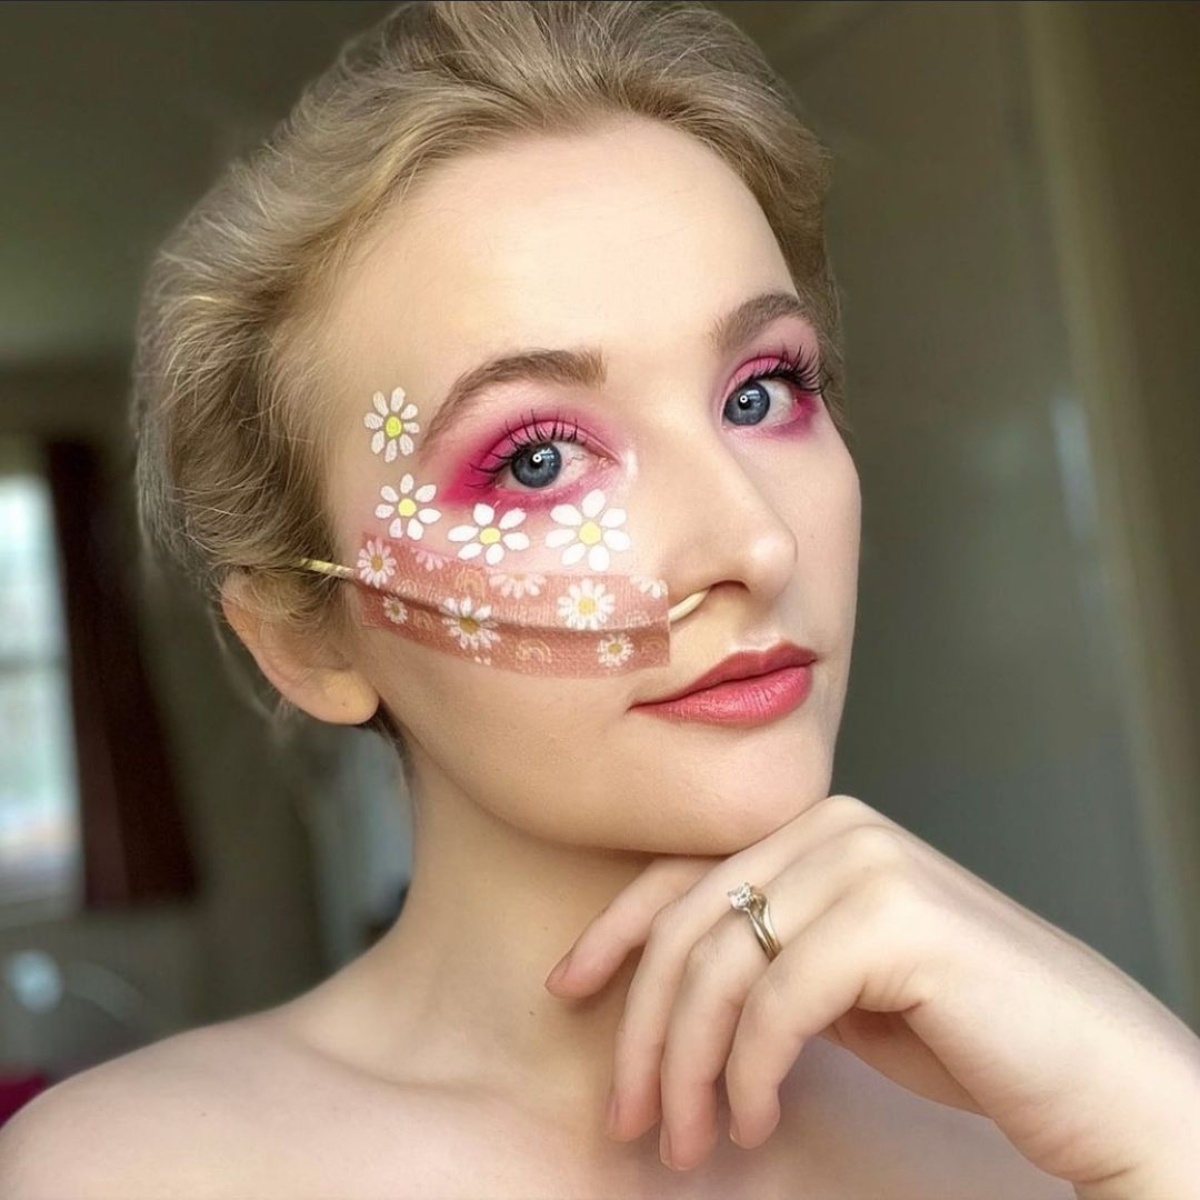 Conoce a la makeup artist que se inspiró en su enfermedad